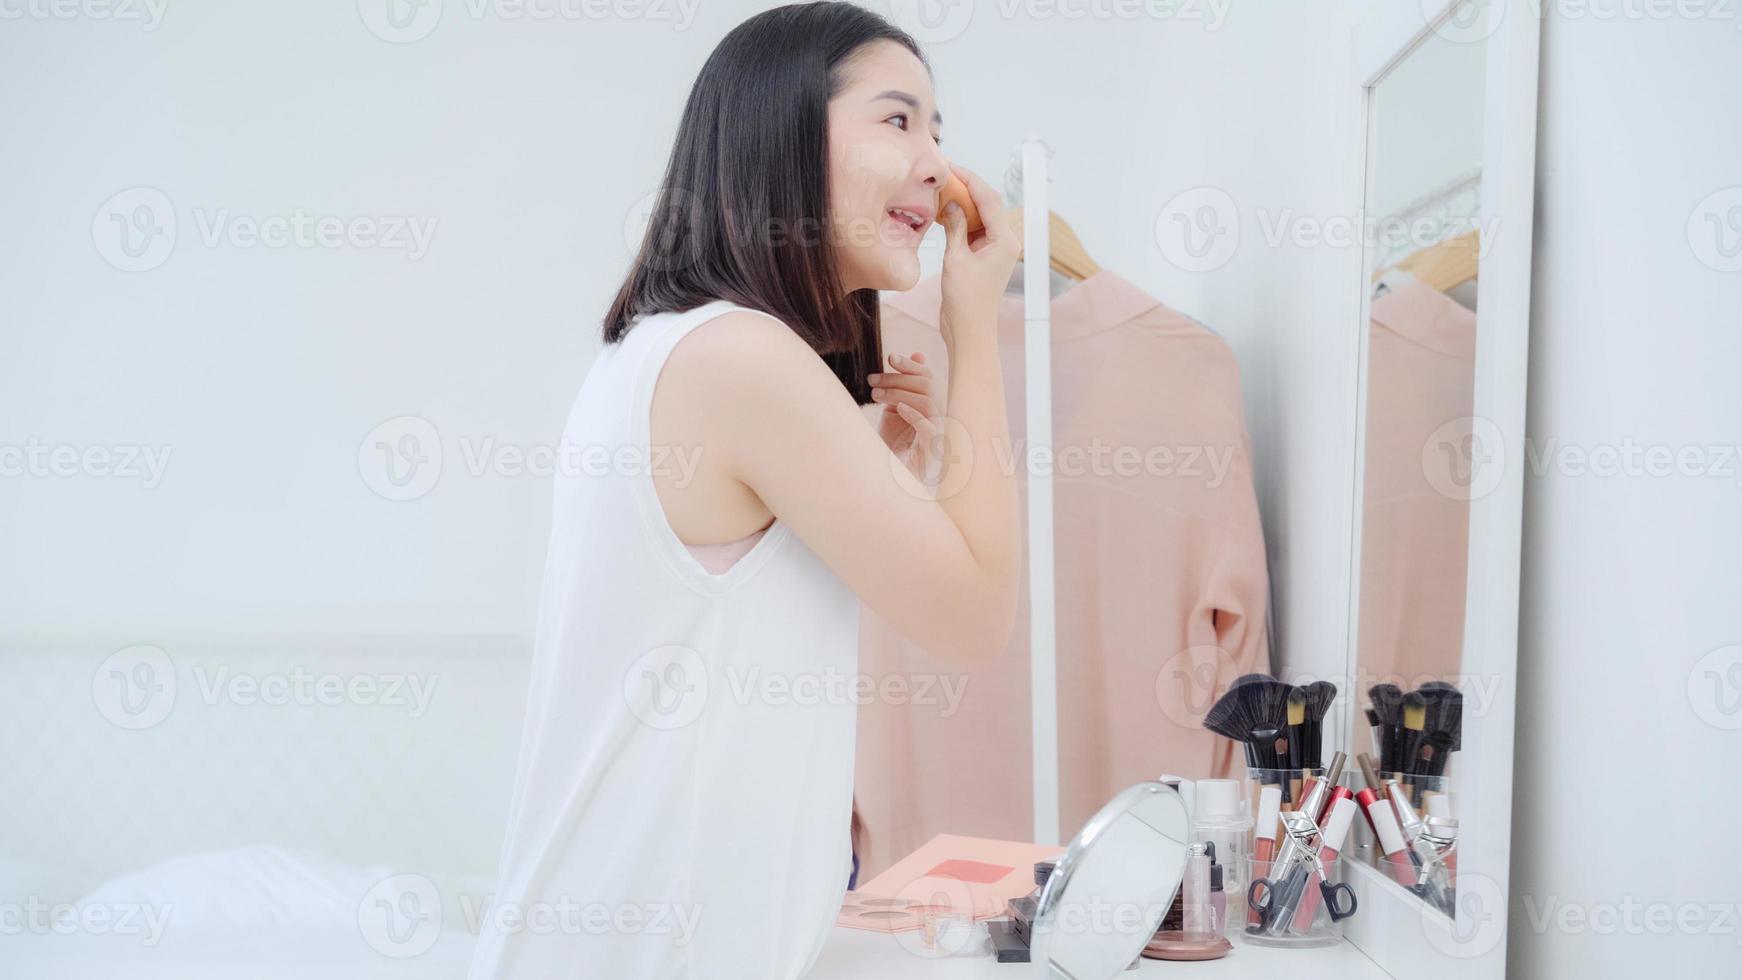 belle femme asiatique utilisant du maquillage en poudre devant le miroir, femme heureuse utilisant des cosmétiques de beauté pour s'améliorer prête à travailler dans la chambre à la maison. les femmes de style de vie se détendent au concept de maison. photo